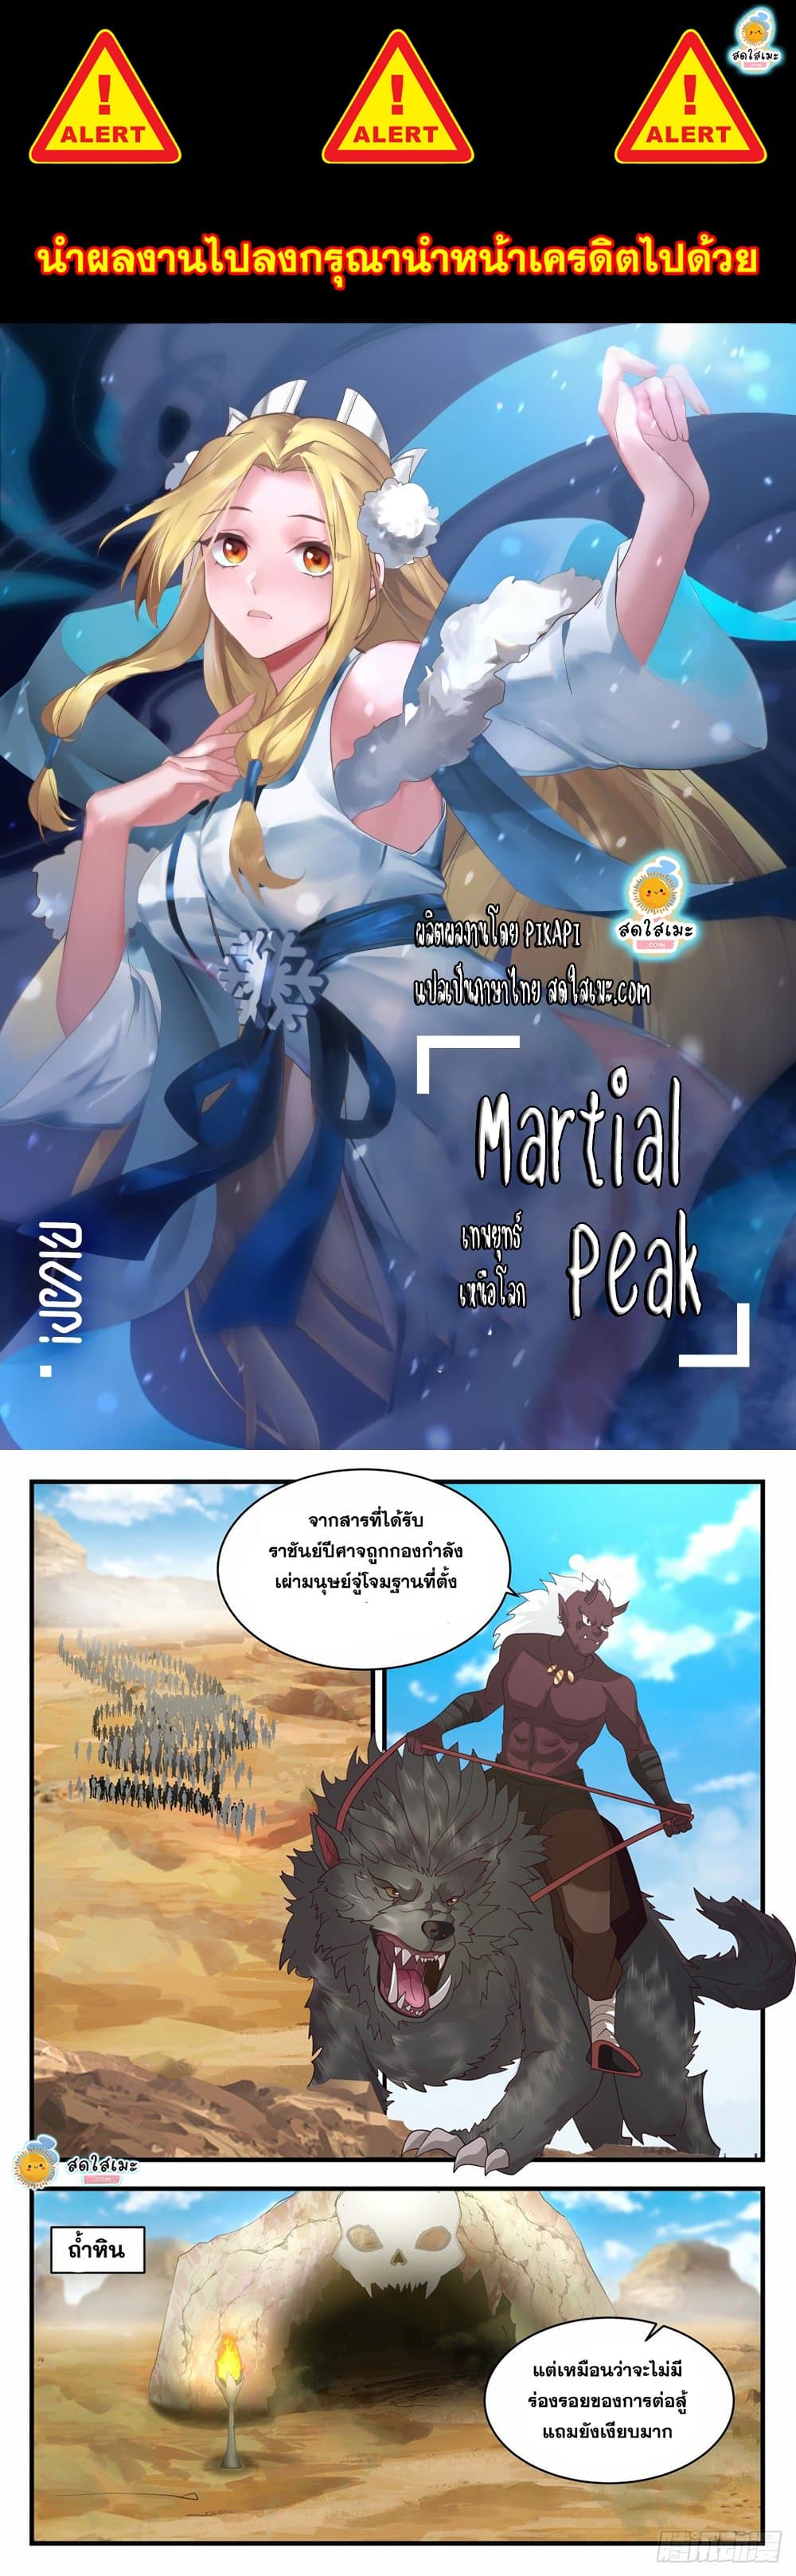 Martial peak2031 (1)